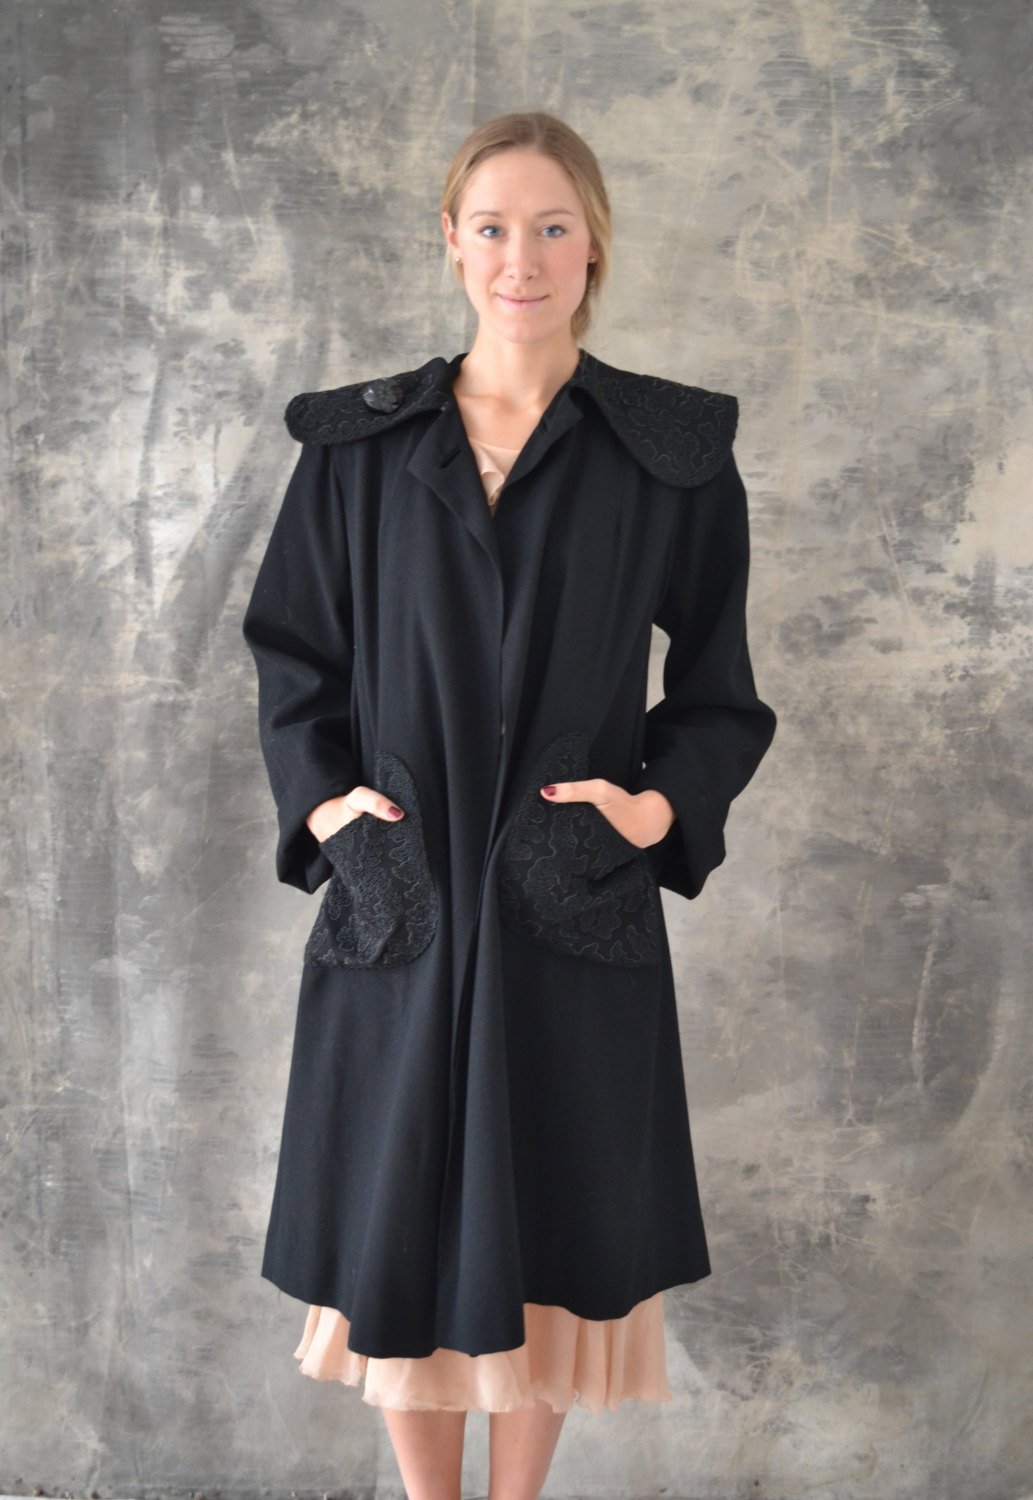 1940s Black Wool Swing Coat